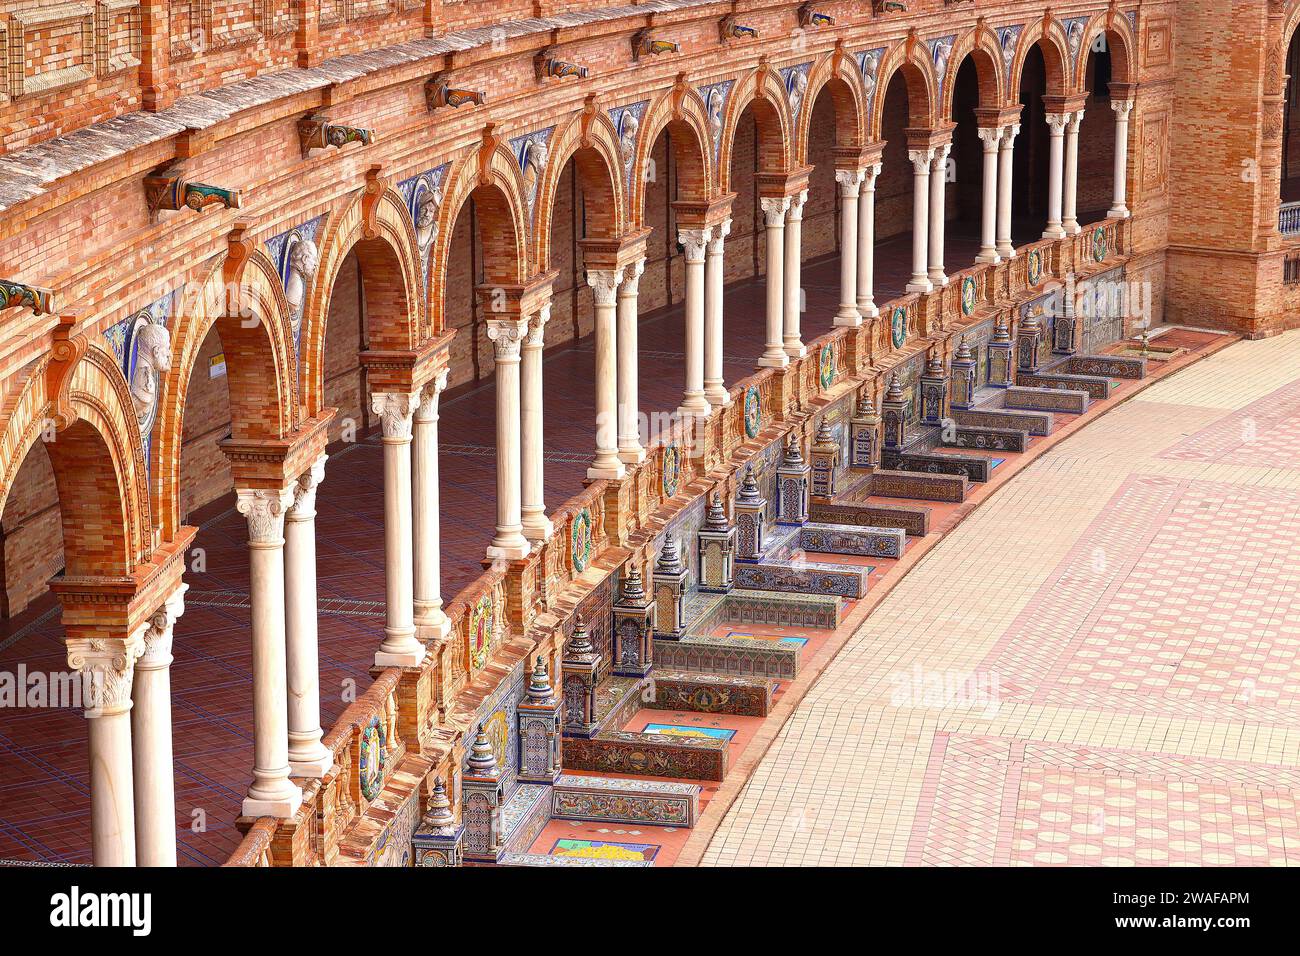 Farbenfrohe geflieste Nischen rund um die Plaza de Espana, die jeweils verschiedene Provinzen Spaniens in Sevilla, Andalusien, repräsentieren Stockfoto